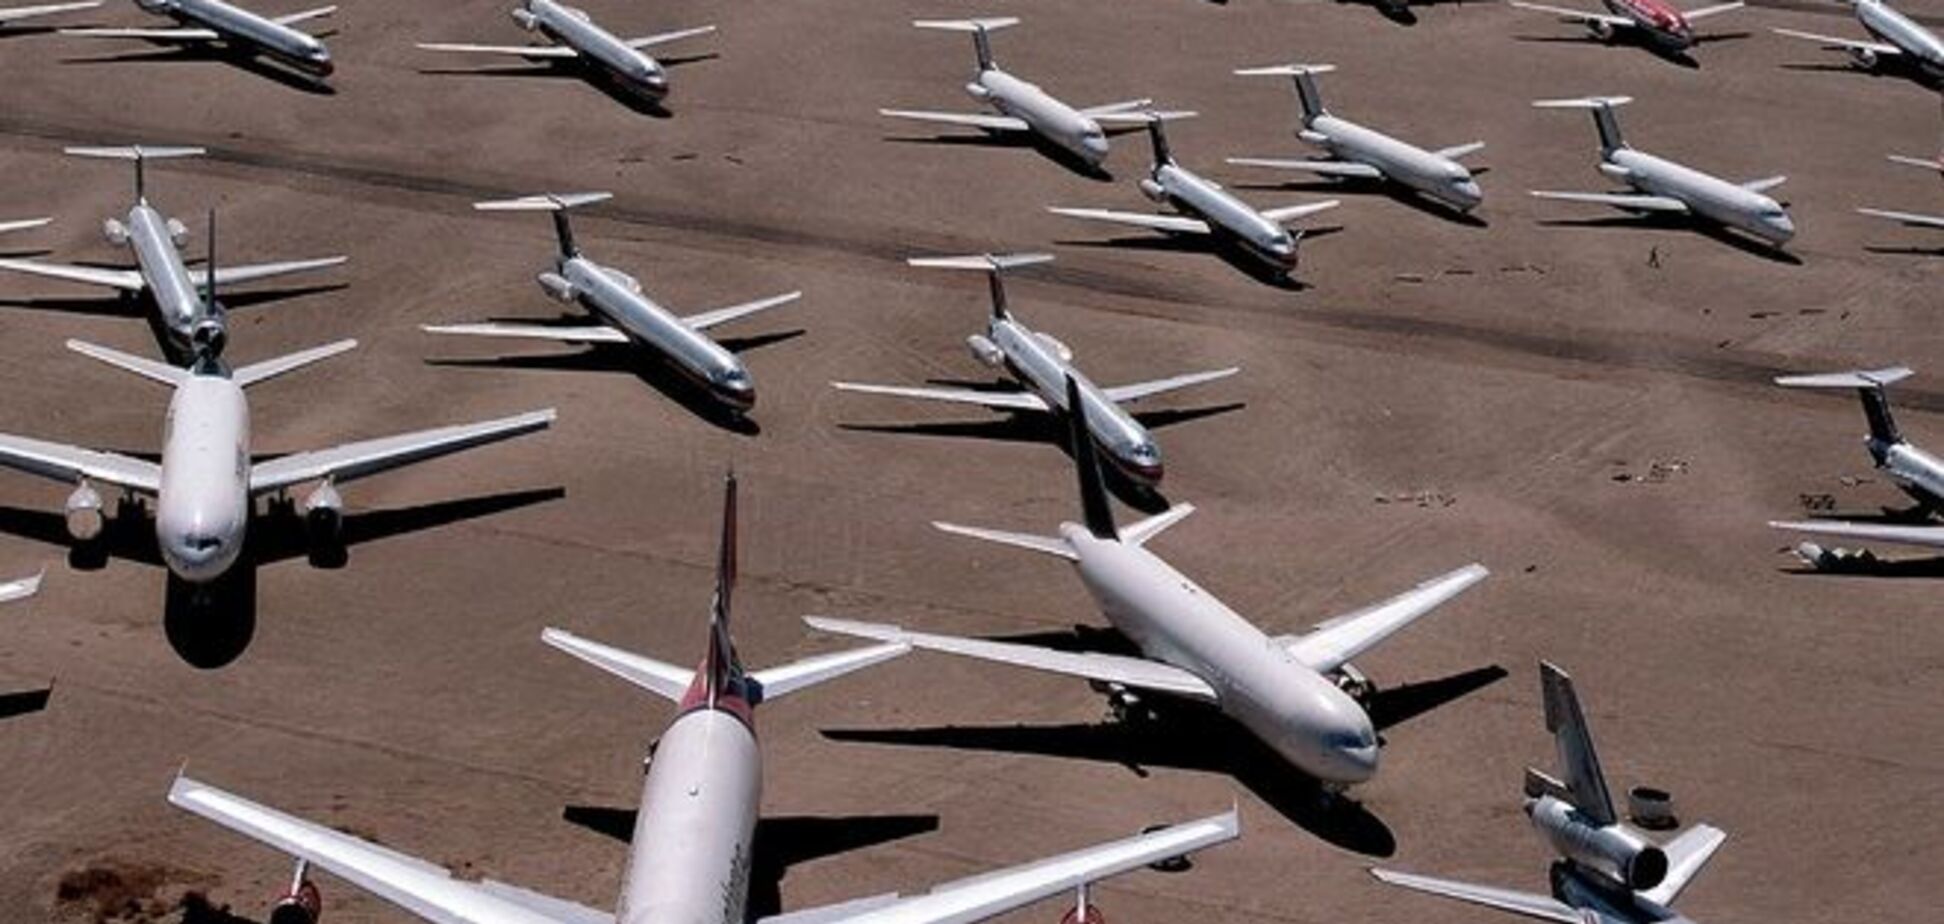 В ООН посчитали, сколько гражданских самолетов было сбито за 60 лет